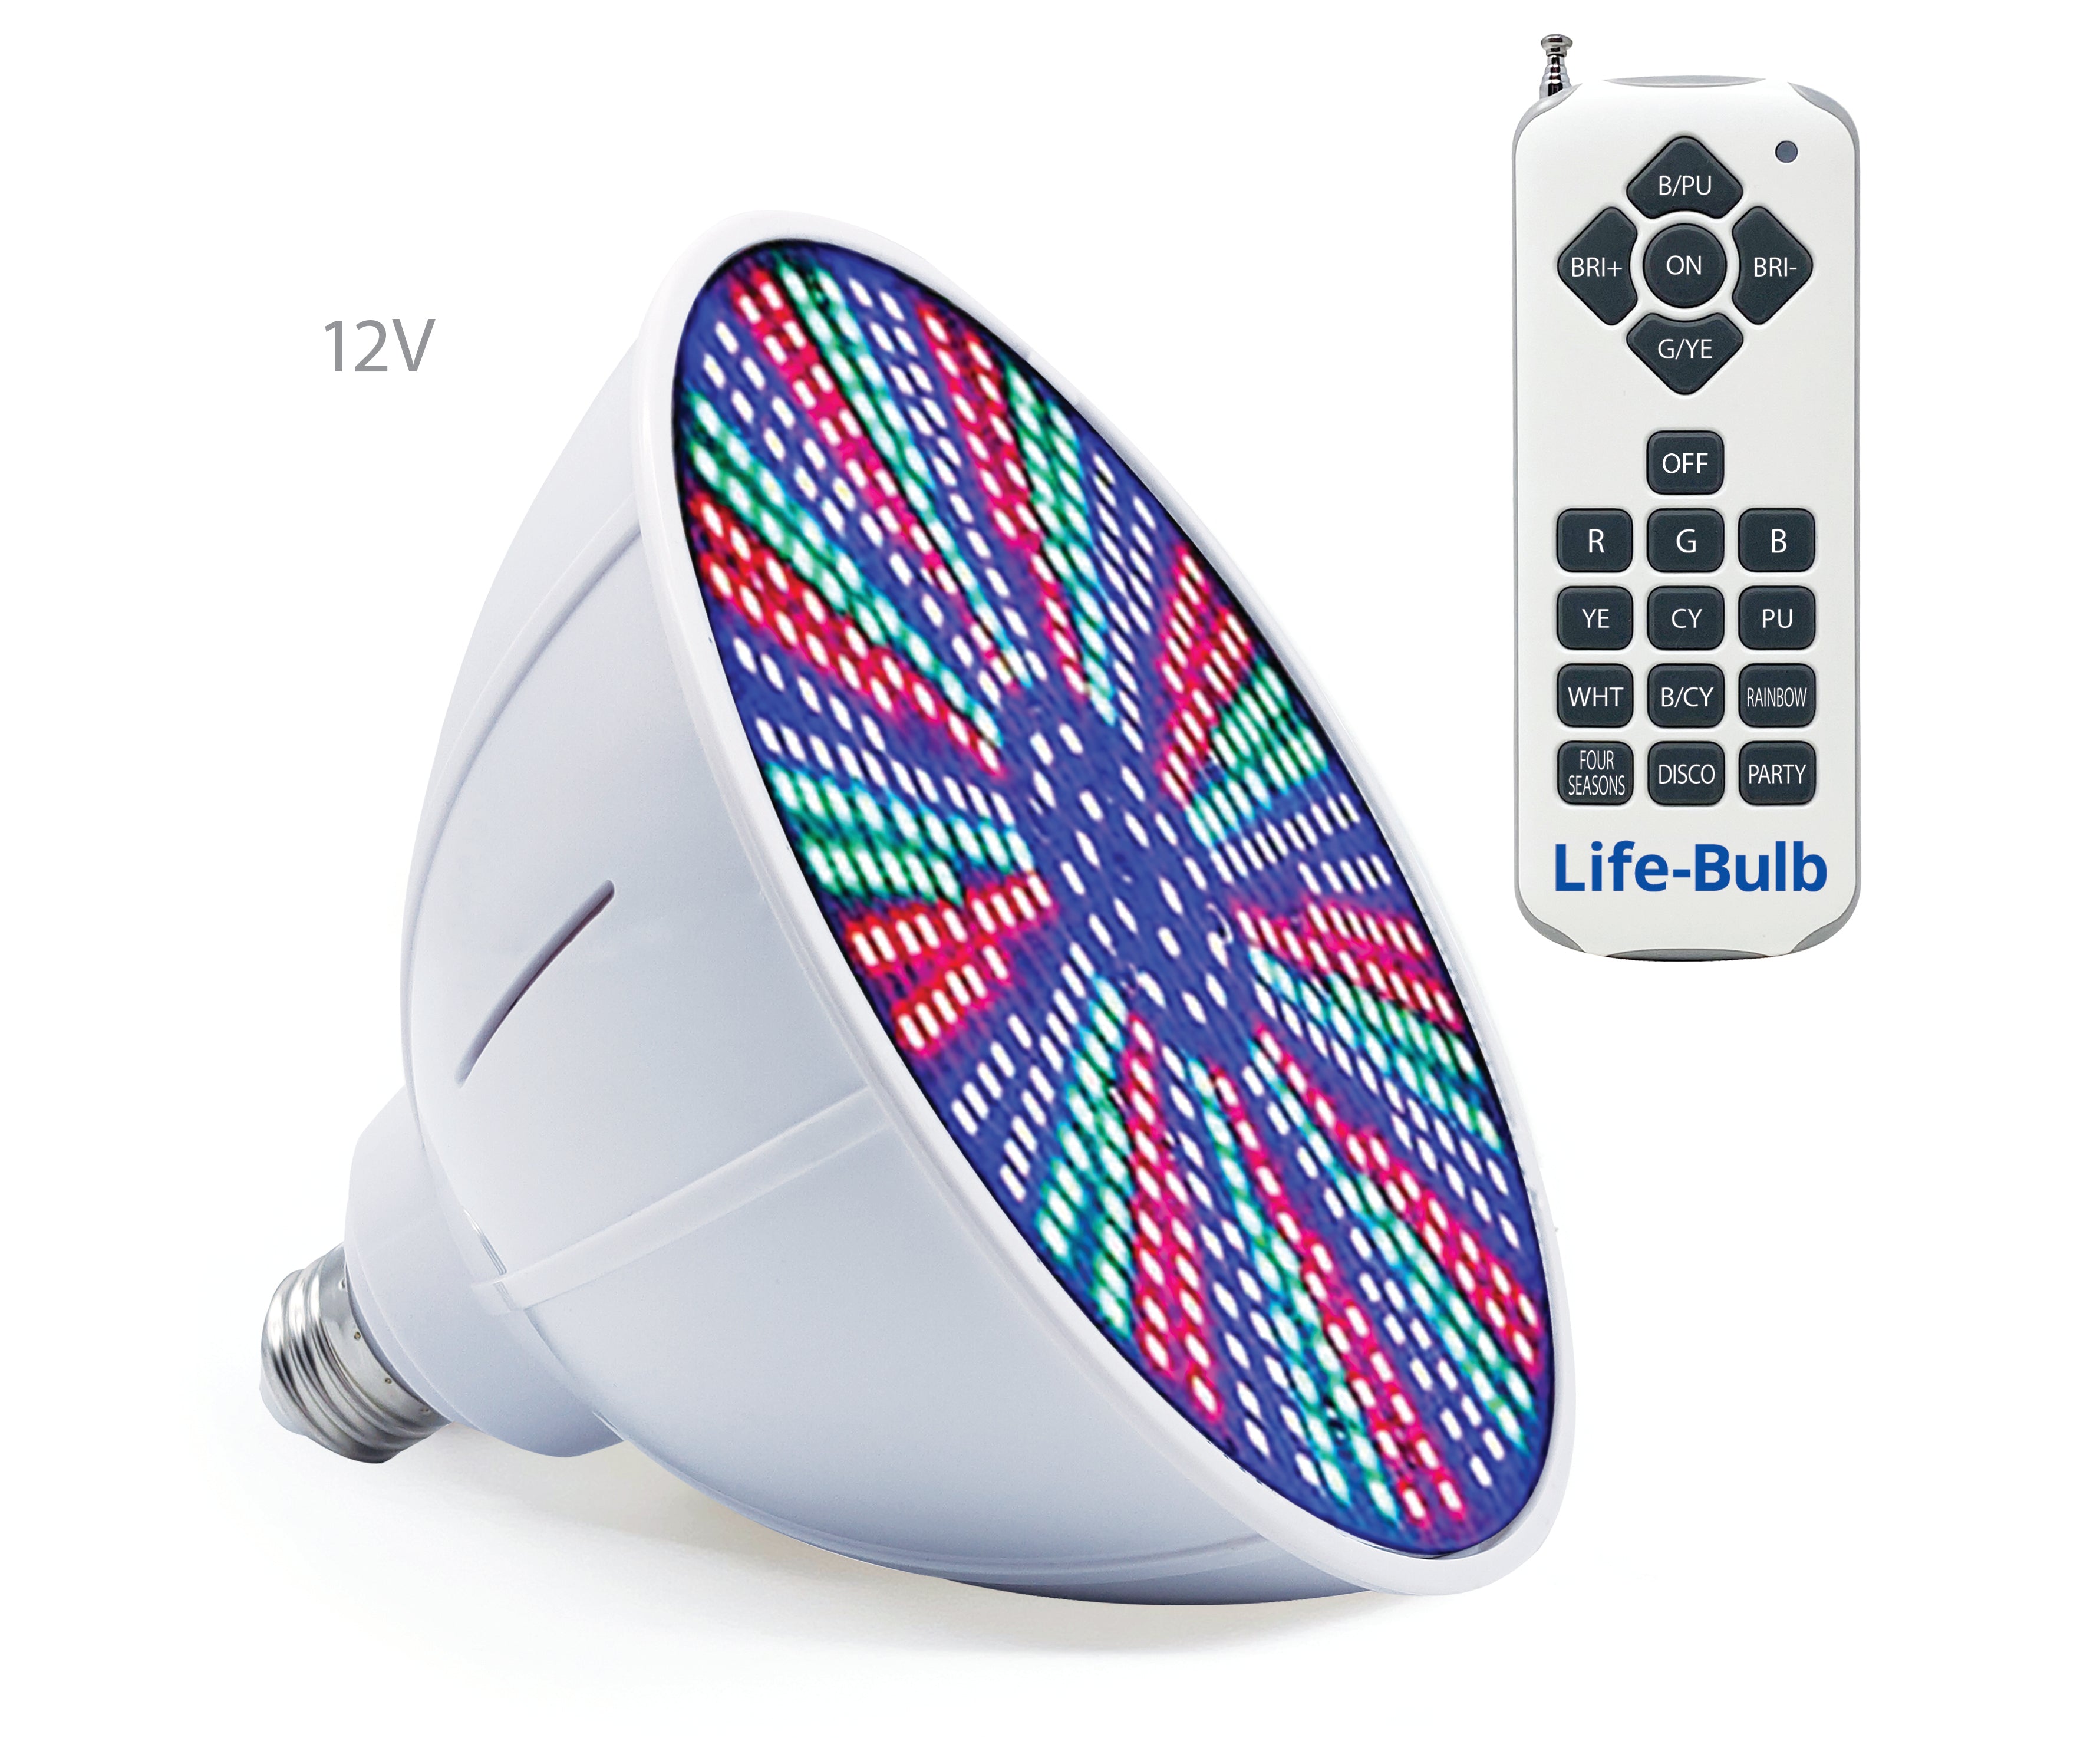 Life-Bulb 12V 40W RGB [Schalter oder Fernbedienung] LED-Pool-Glühbirne | Farbwechsel | Lebenslange Ersatzgarantie | Ersatzbirne für Pentair- und Hayward-Leuchten